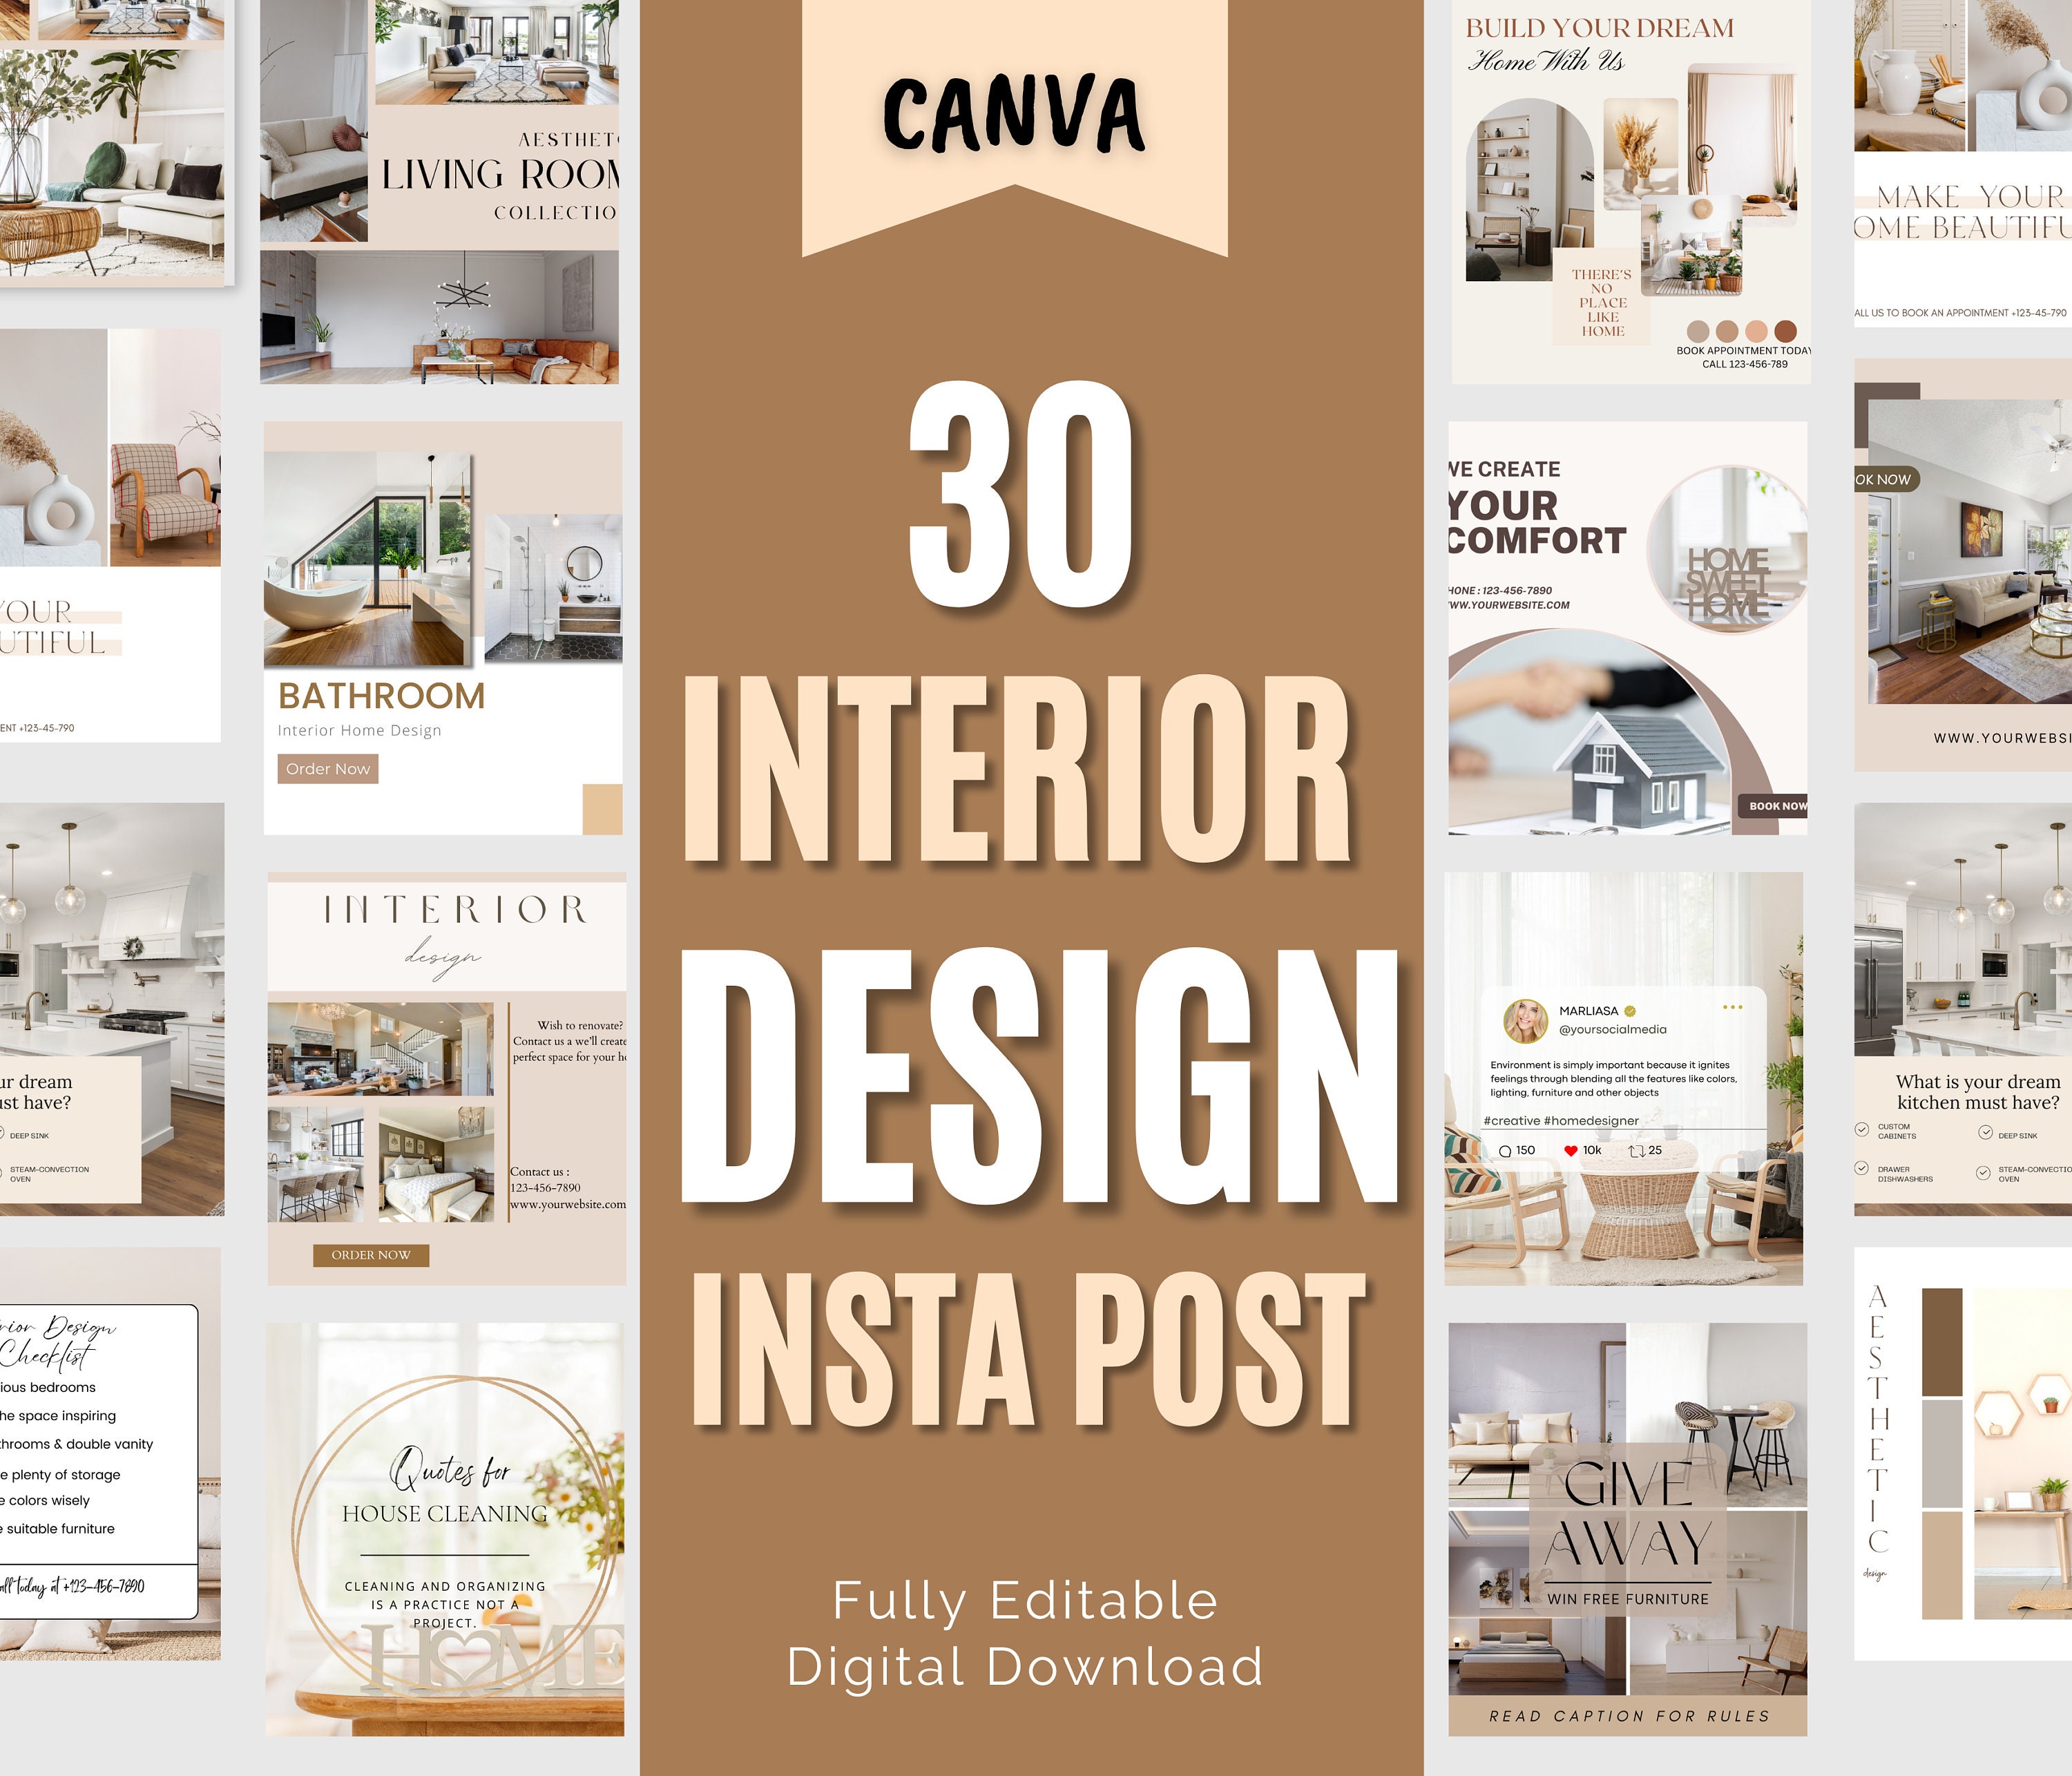 Interior Design Instagram Post Interior Decor Content - Etsy